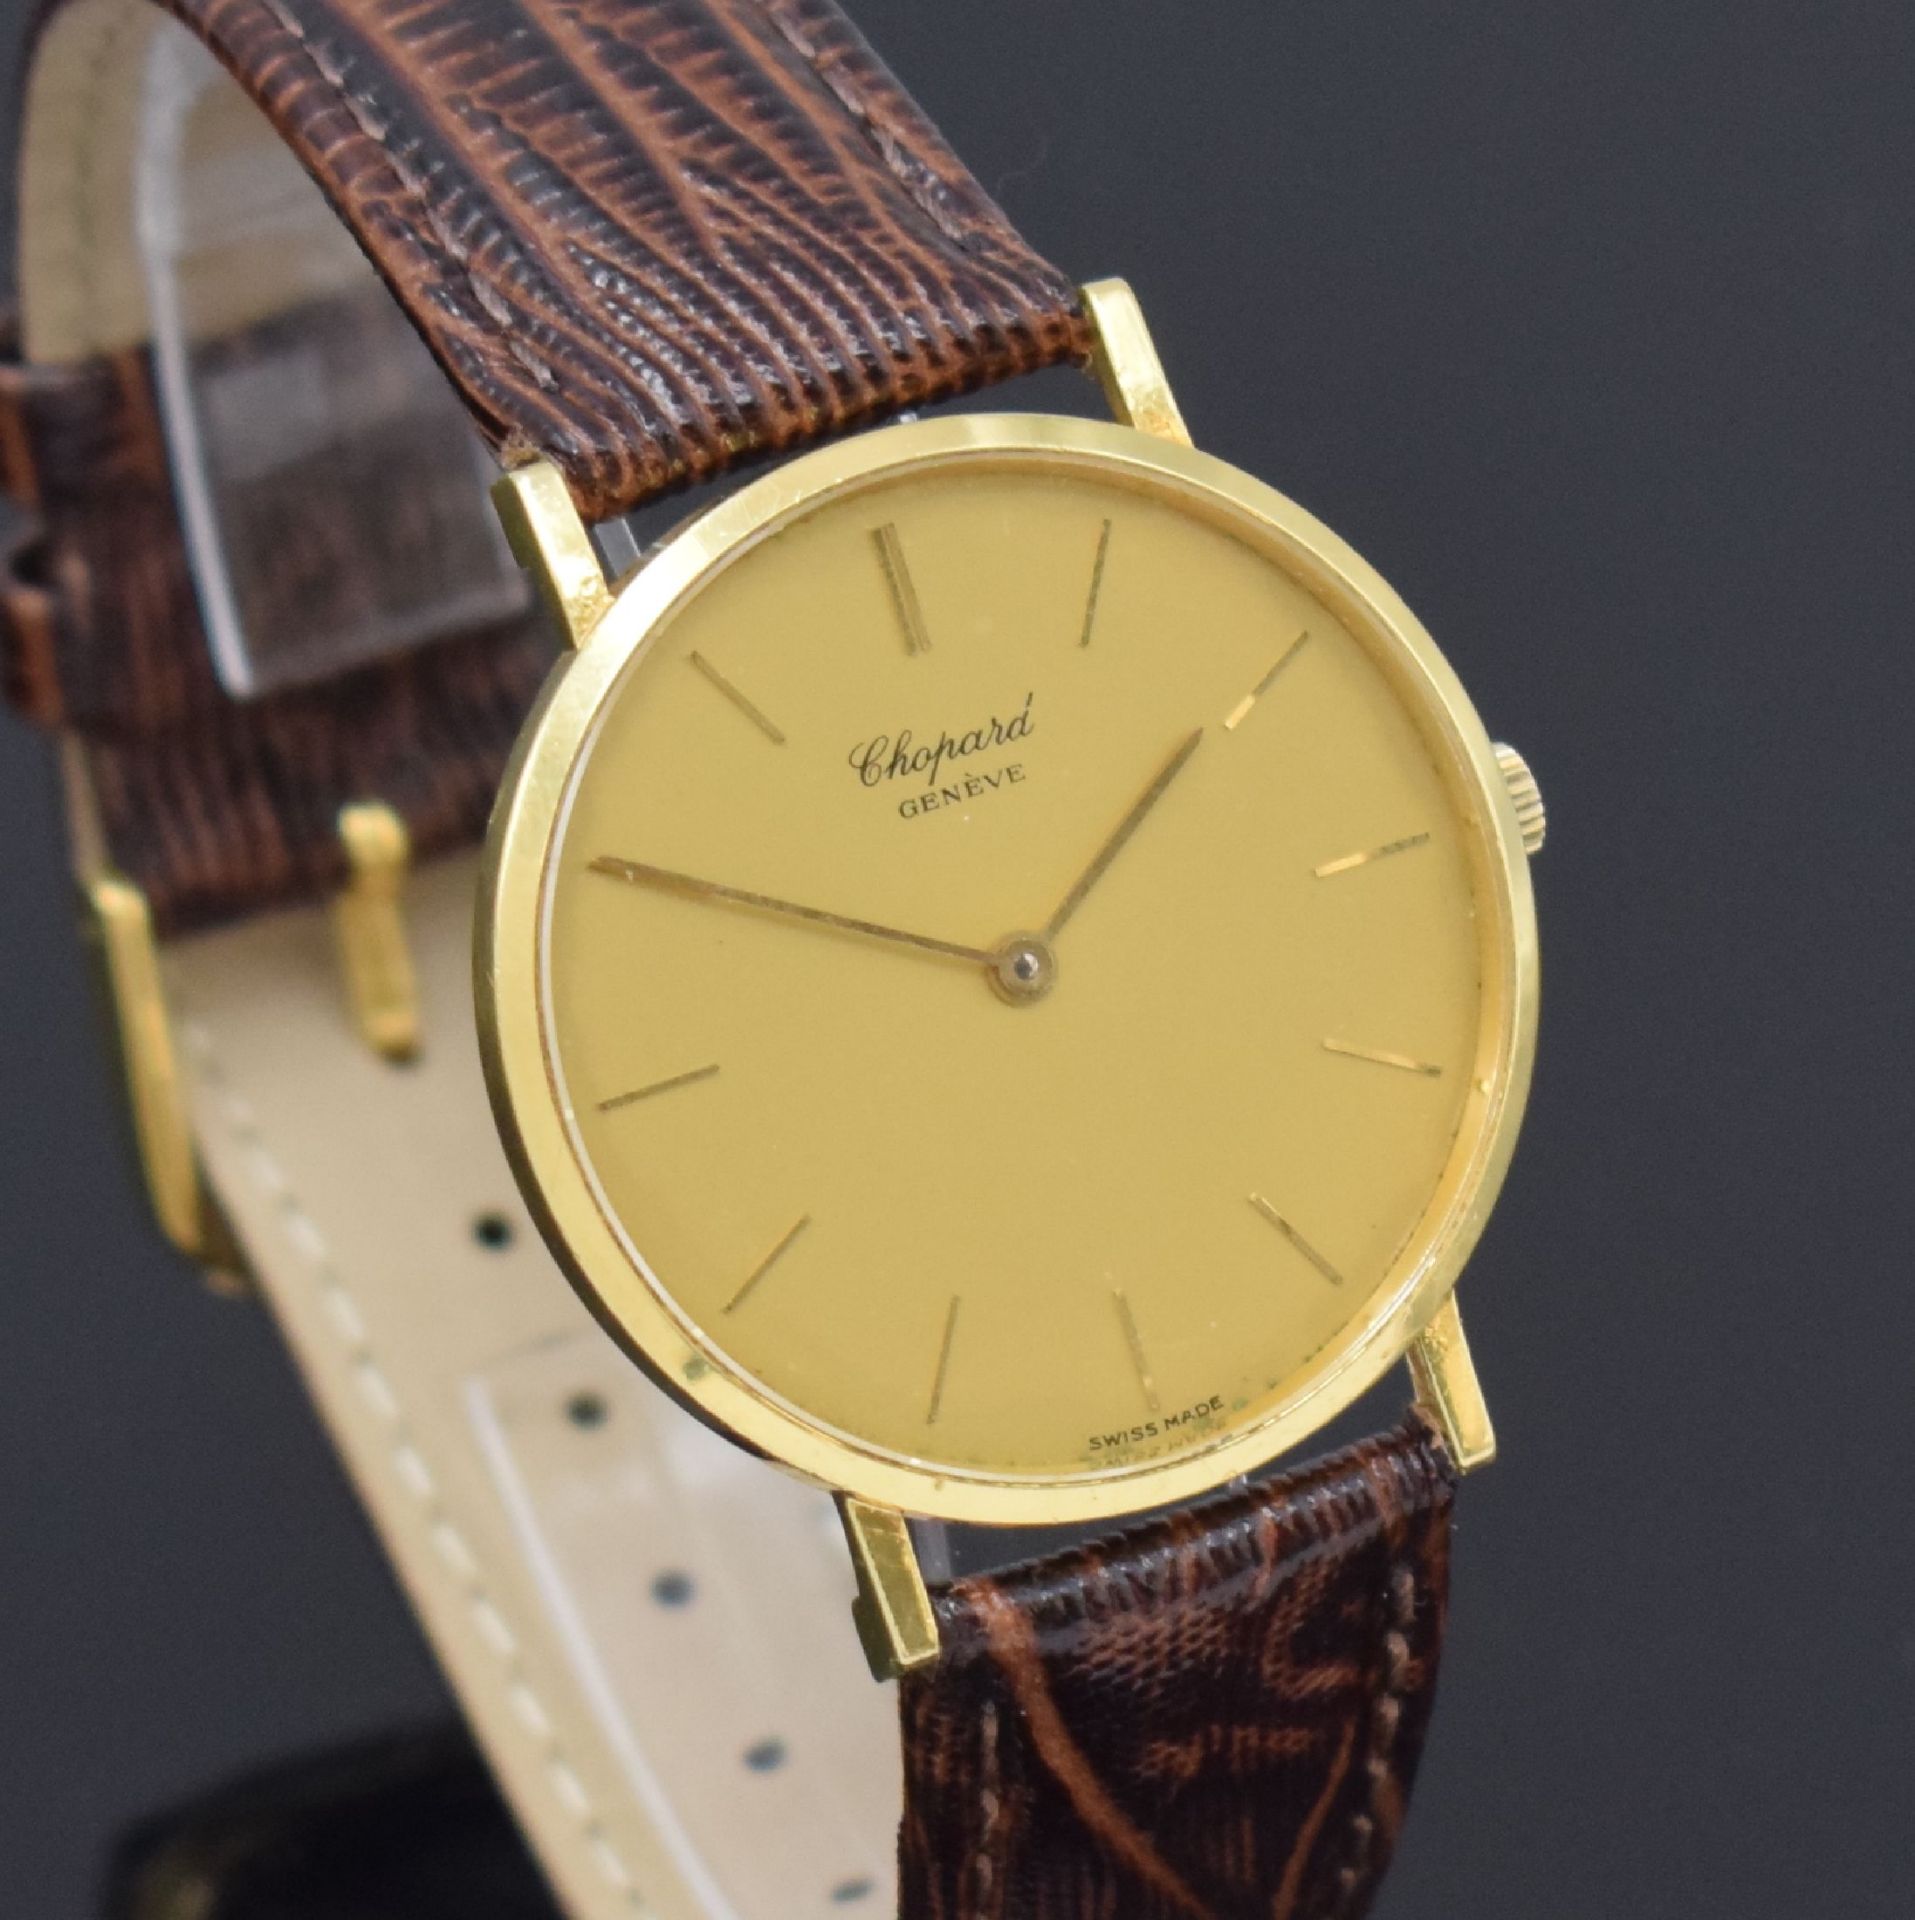 CHOPARD Armbanduhr in GG 750/000 Referenz 1013, Schweiz - Bild 4 aus 5